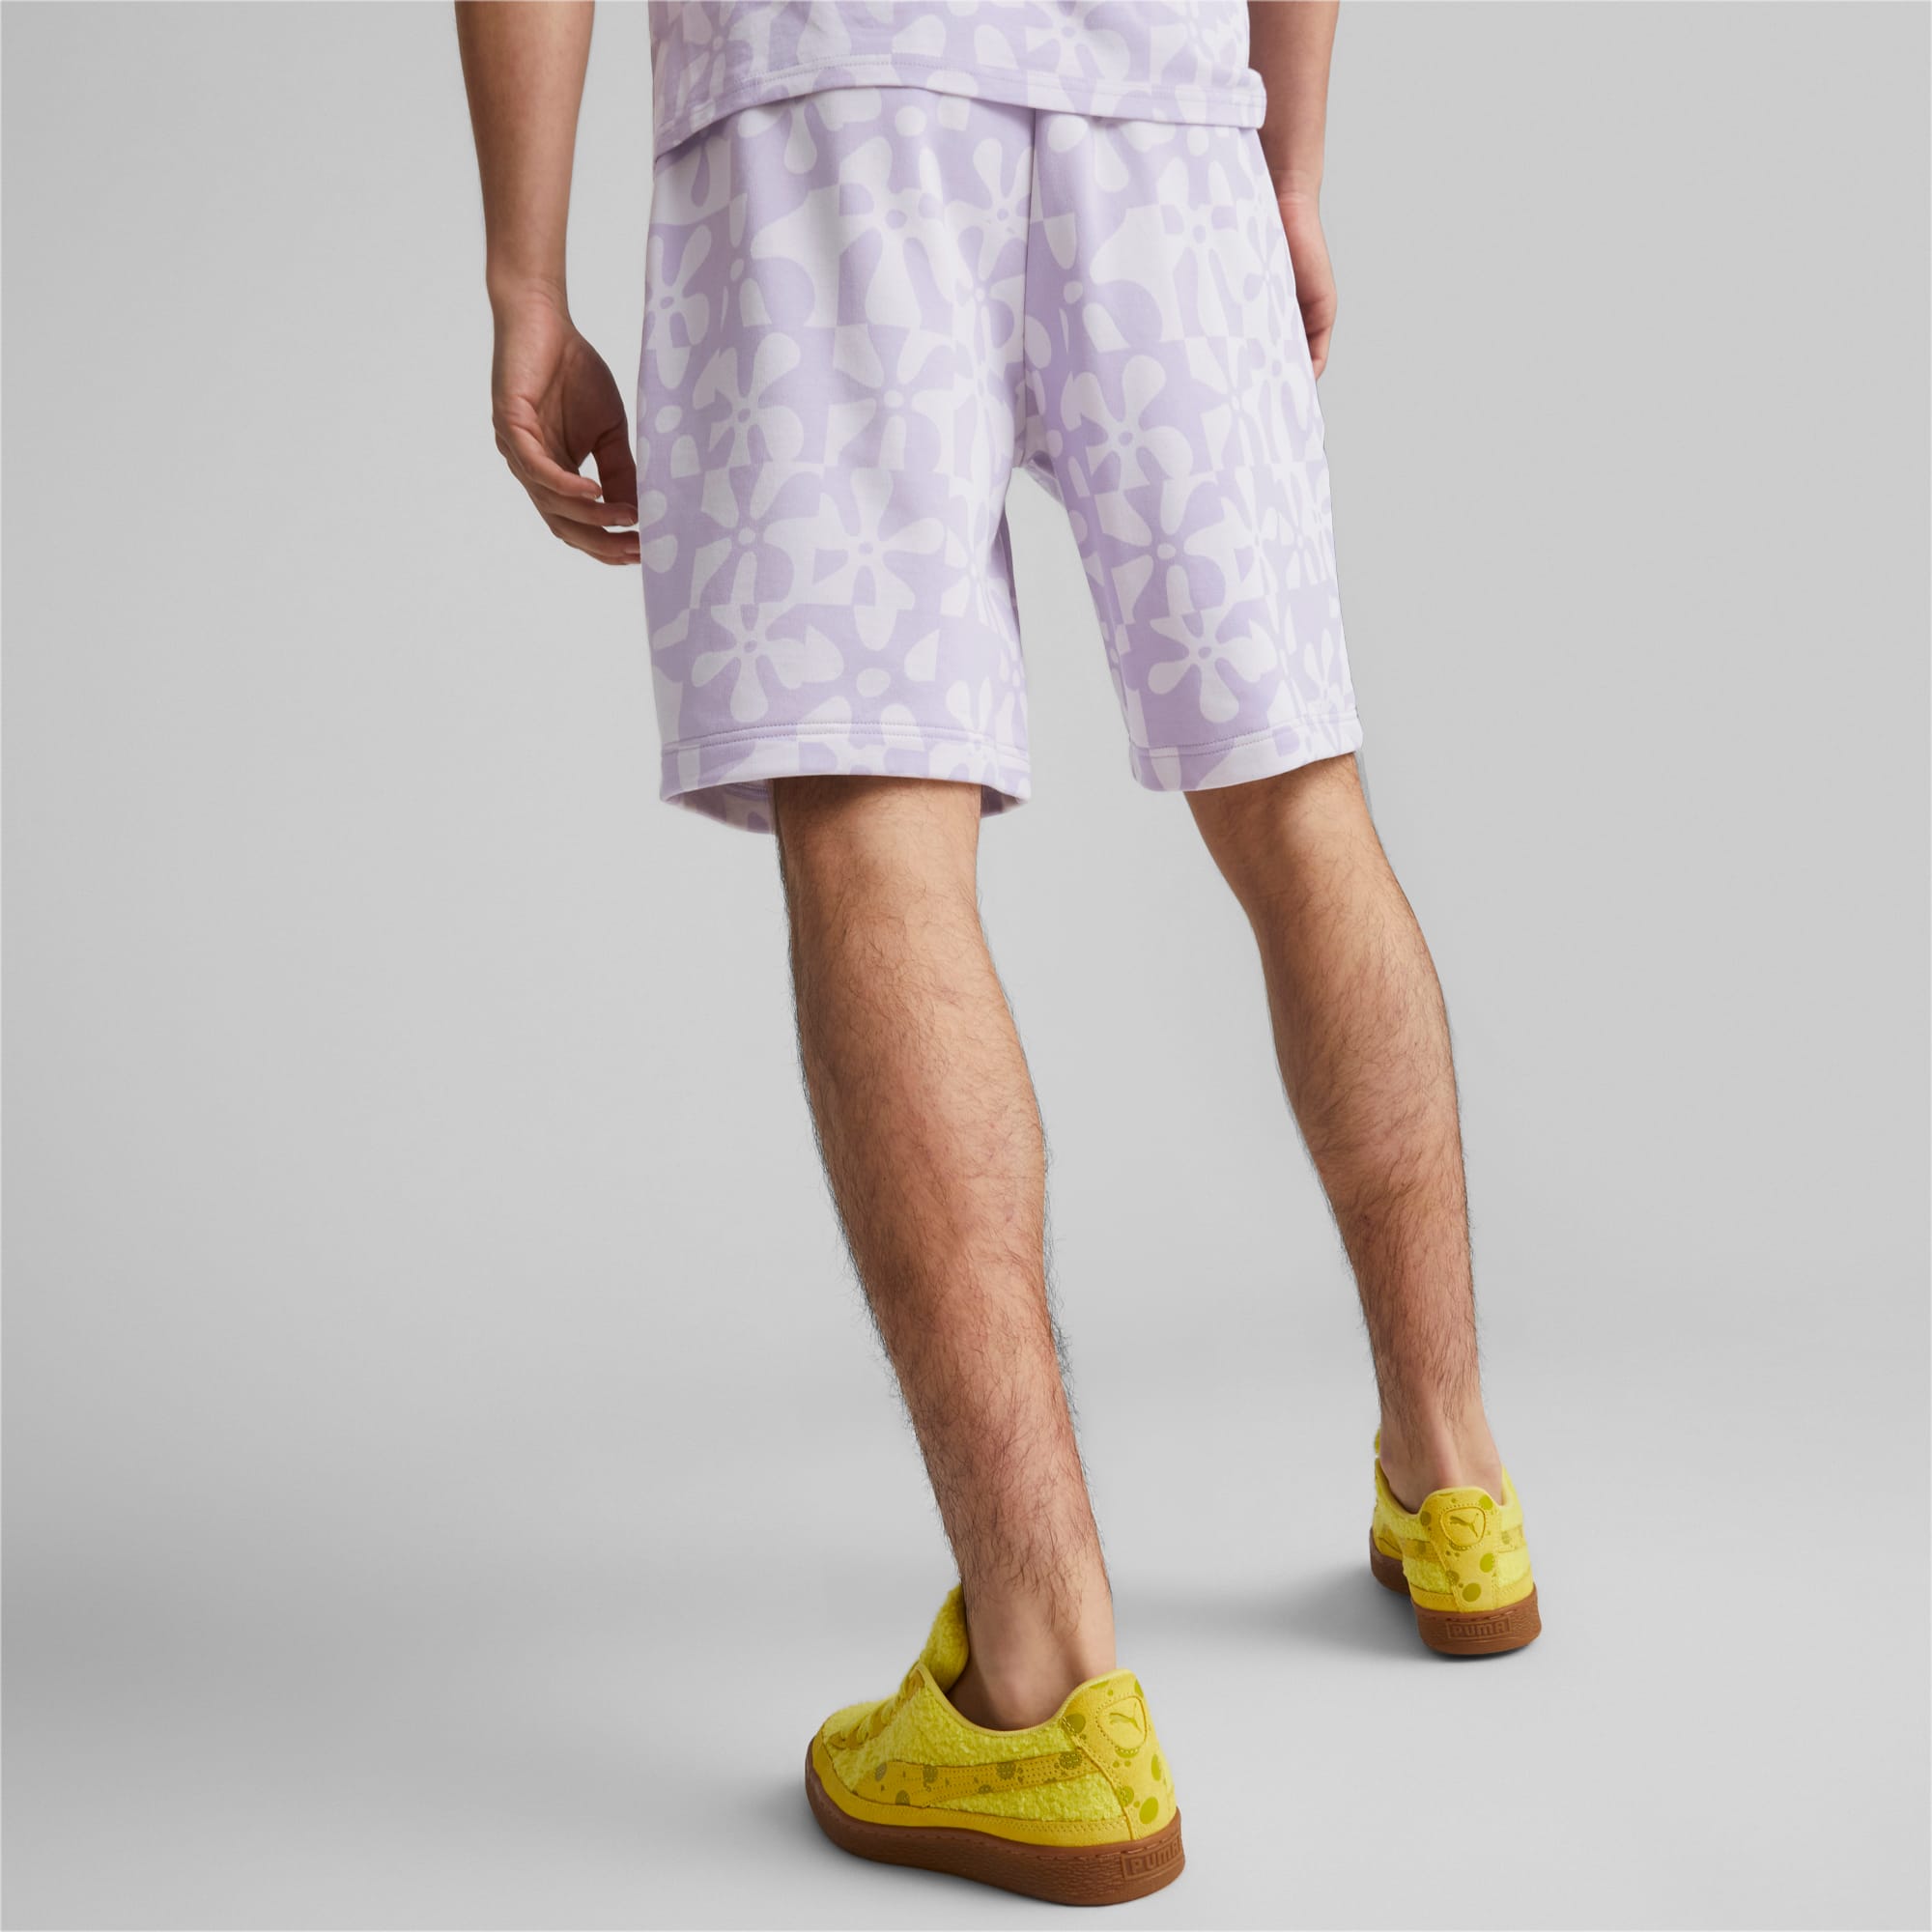 Forest x Spongebob 100% Cotton Ladies Boxer Shorts ( 1 Piece ) Selected  Colours - SLD0007X